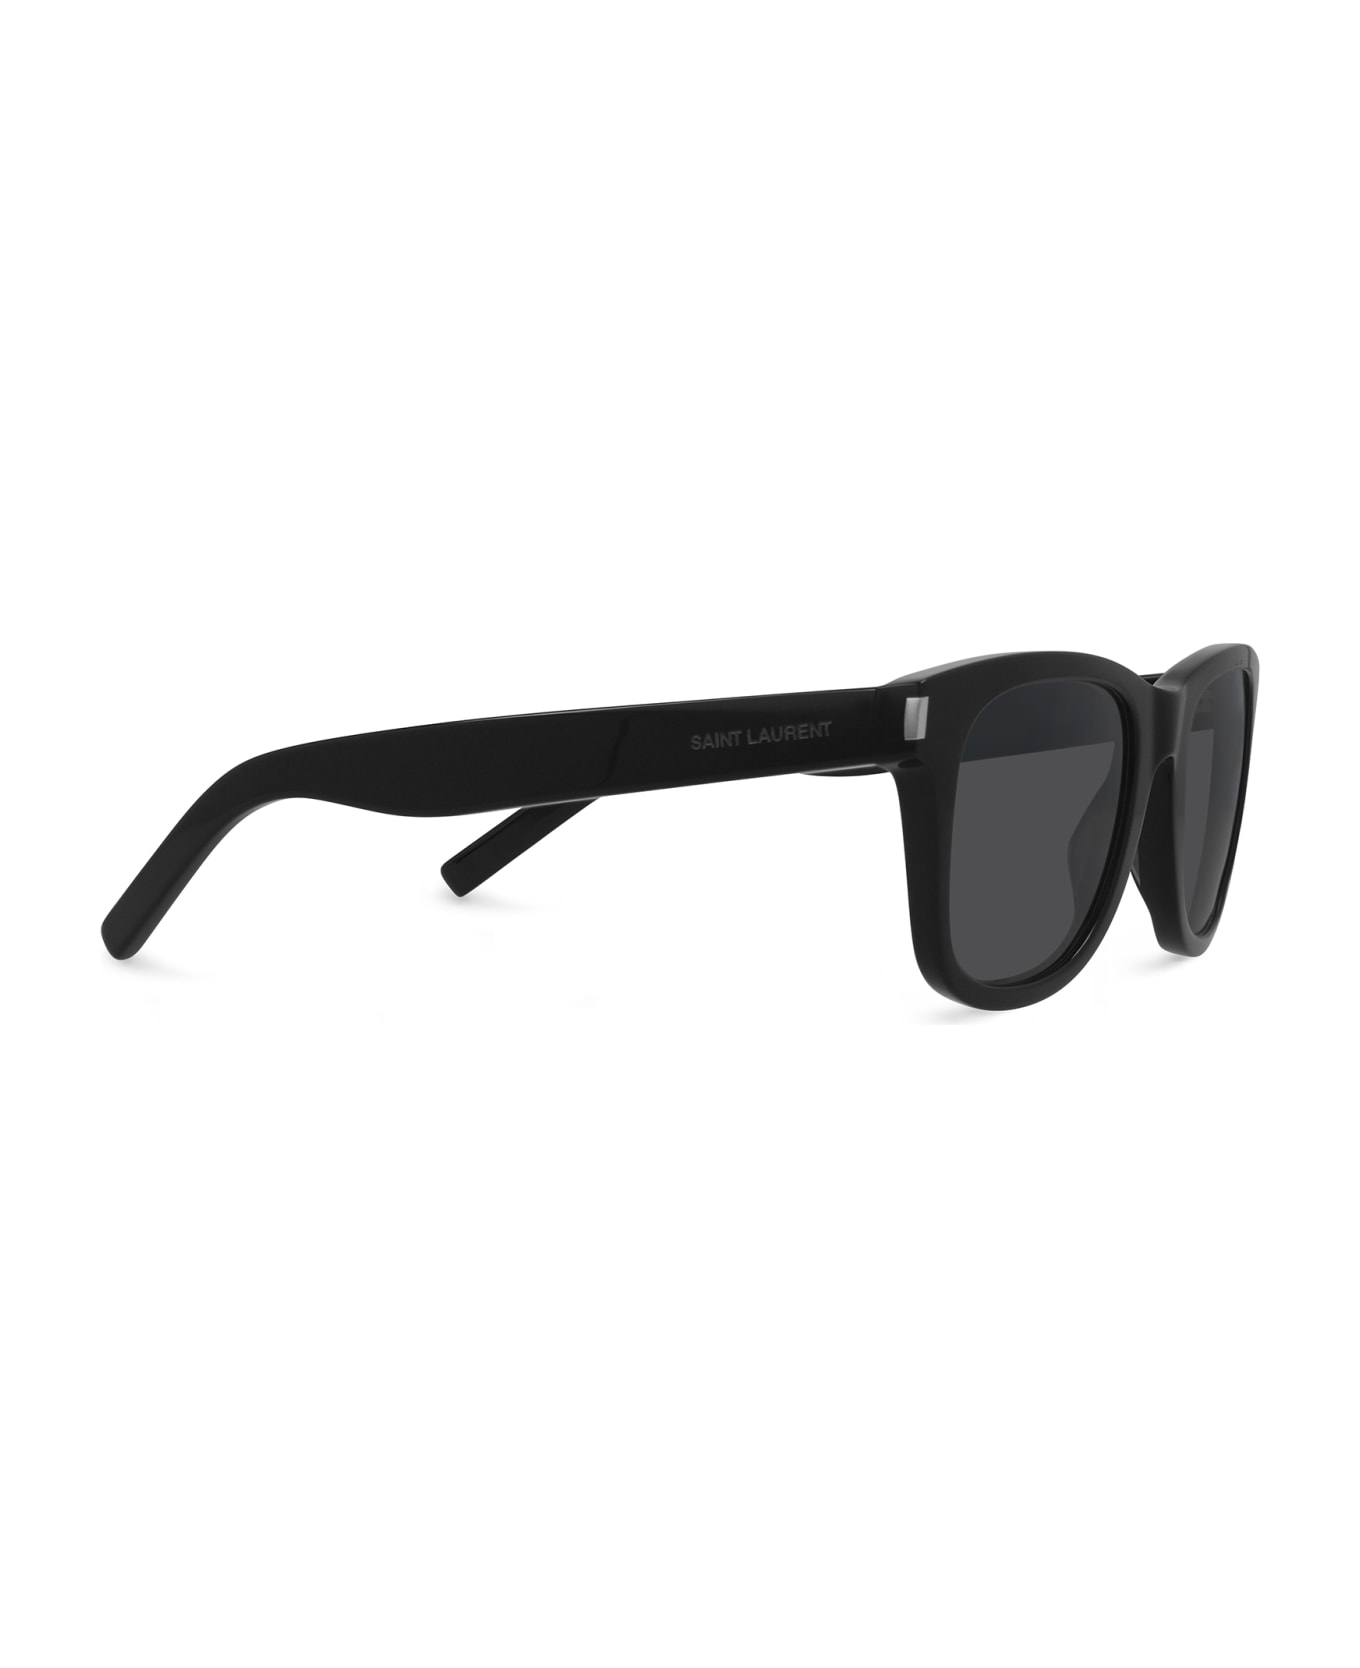 Saint Laurent Eyewear Sl 51 Black Sunglasses - Black サングラス